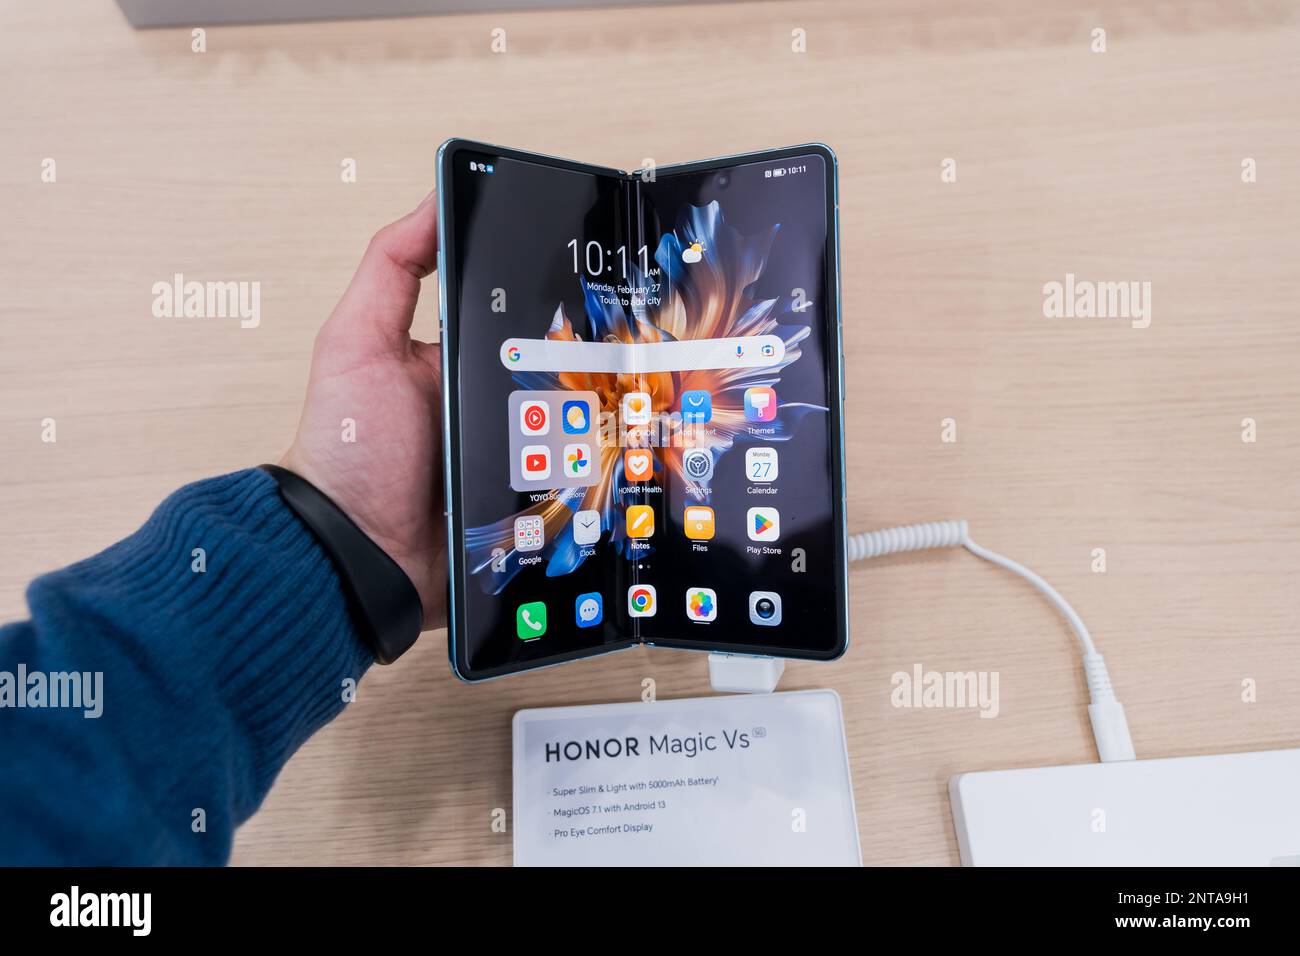 HONOR Magic Vs - 7.9 inches Foldable Phone - HONOR Global